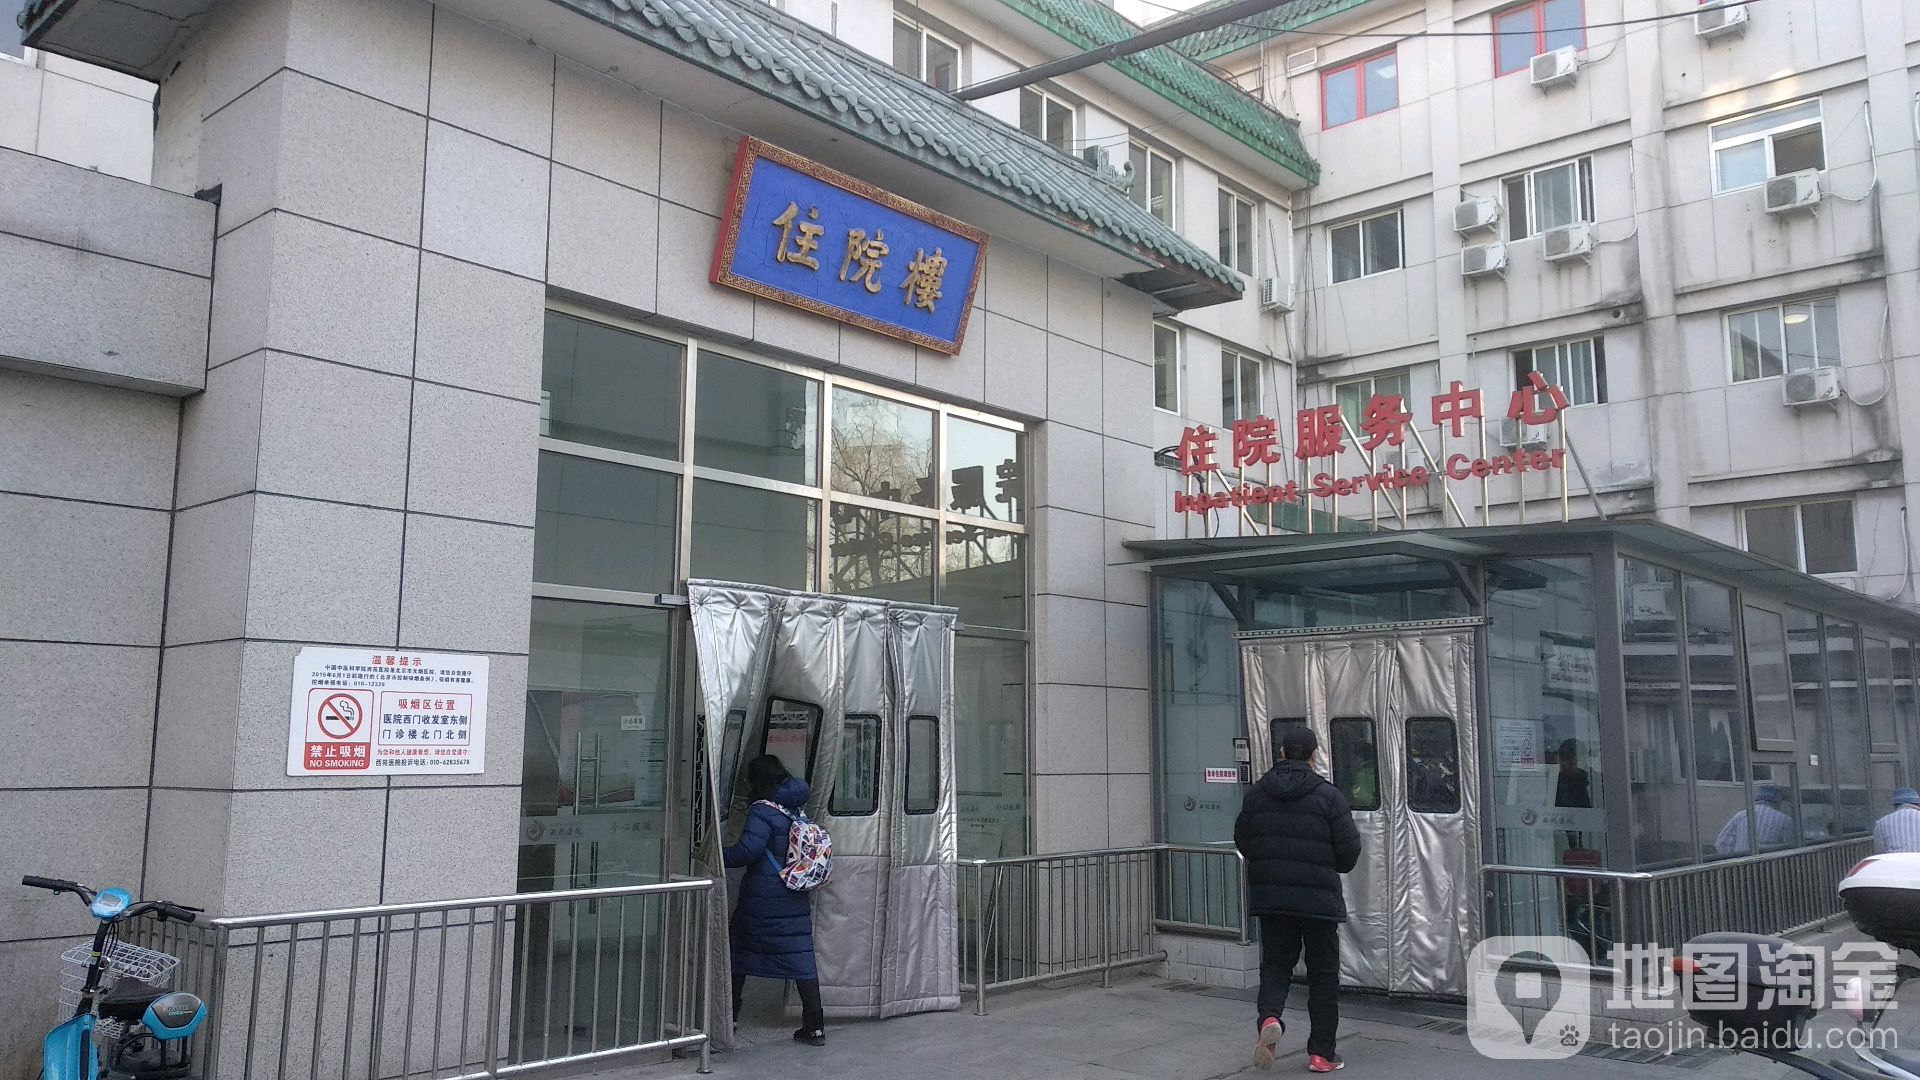 怎么去,怎么走):  北京市海淀区西苑操场1号  中国中医科学院西苑医院